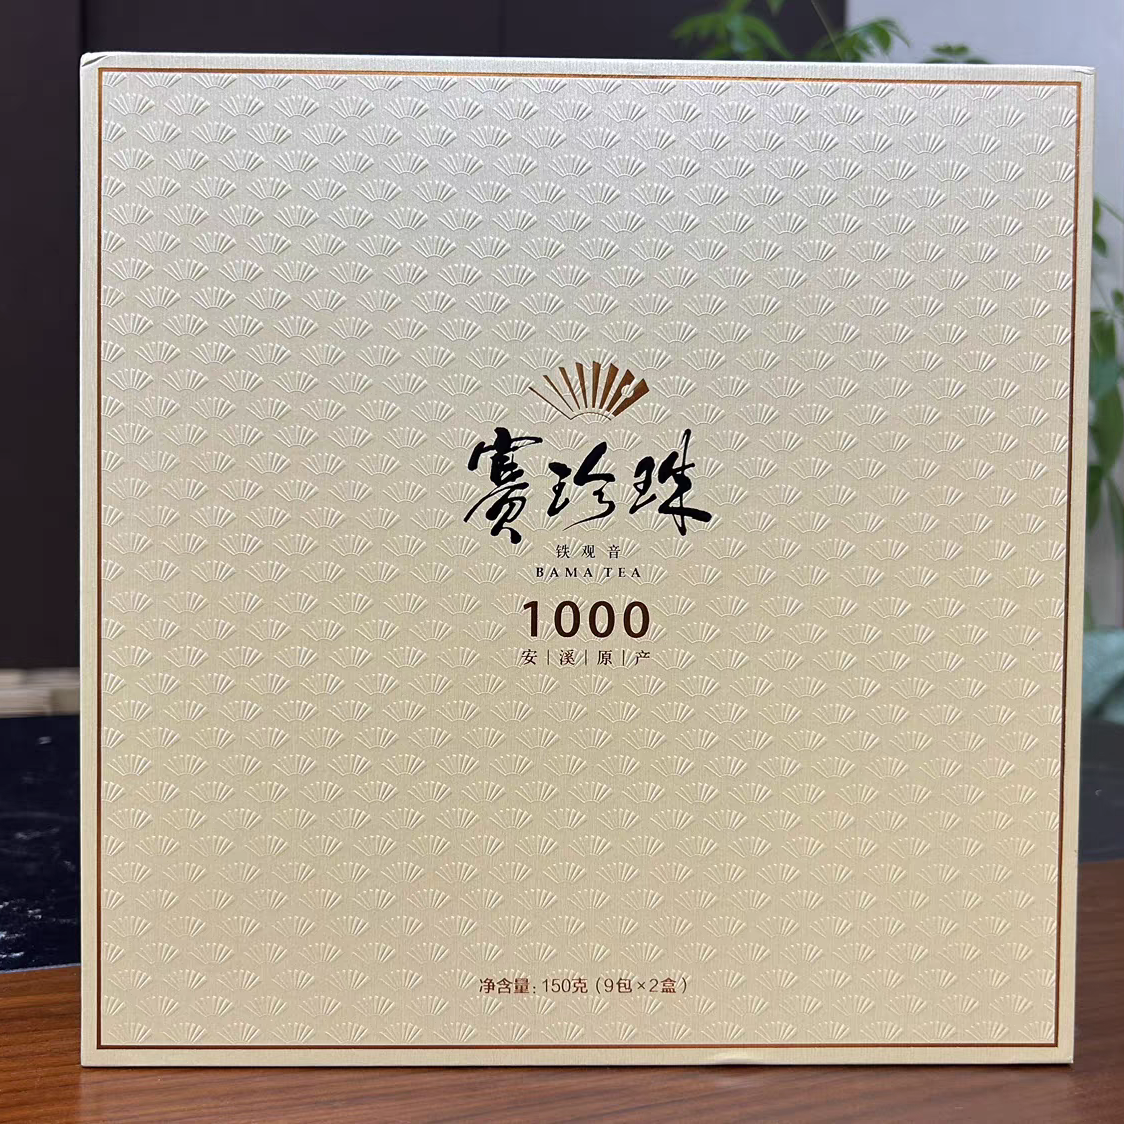 八马茶业赛珍珠1000特级浓香型安溪铁观音乌龙茶送礼茶礼盒150g